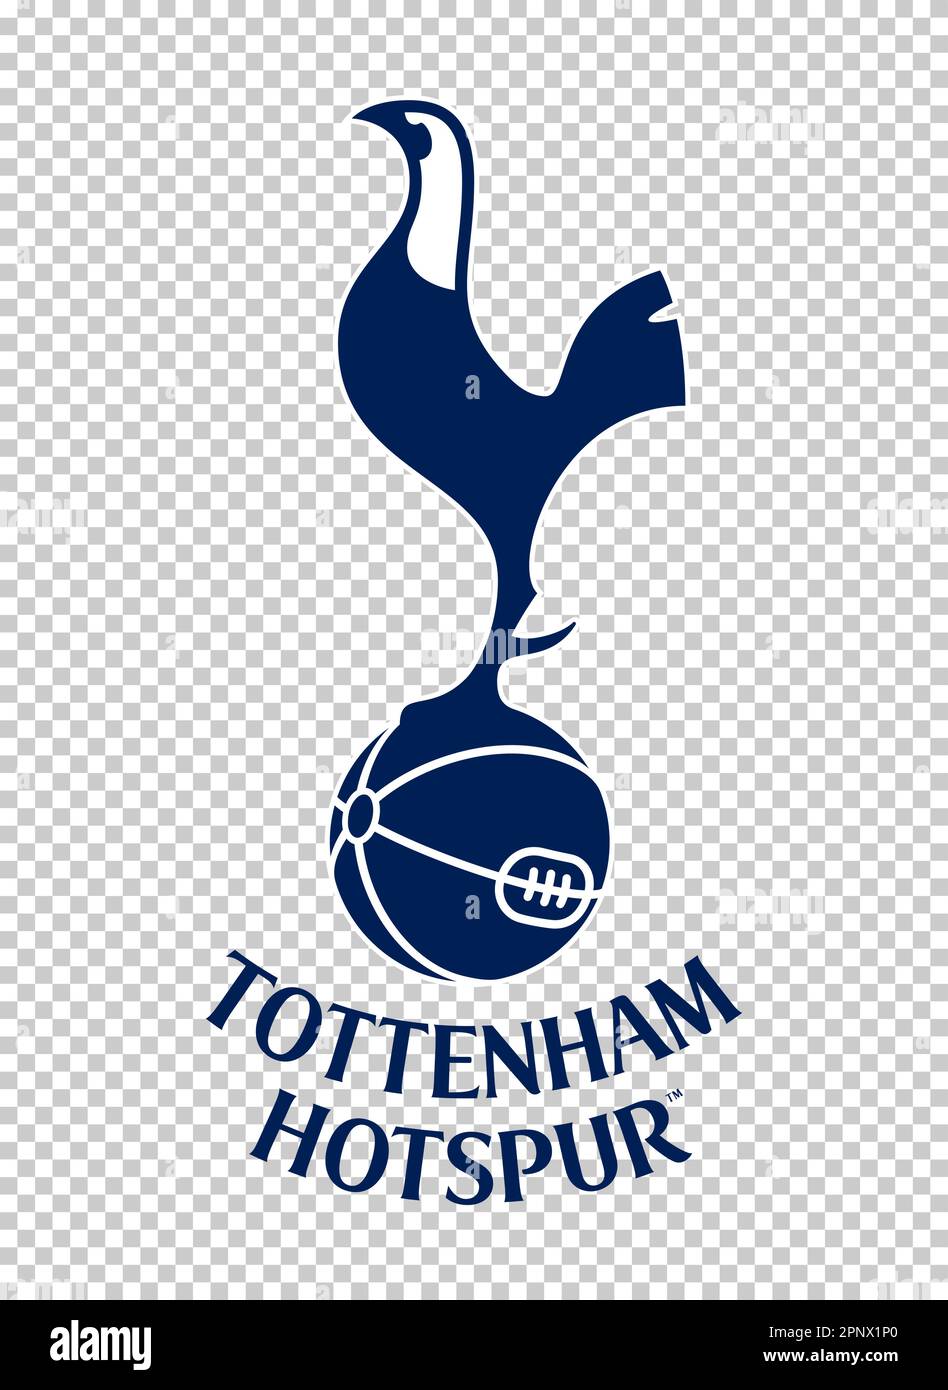 Emblème du club de football Tottenham Hotspur England sur fond transparent. Illustration vectorielle Illustration de Vecteur